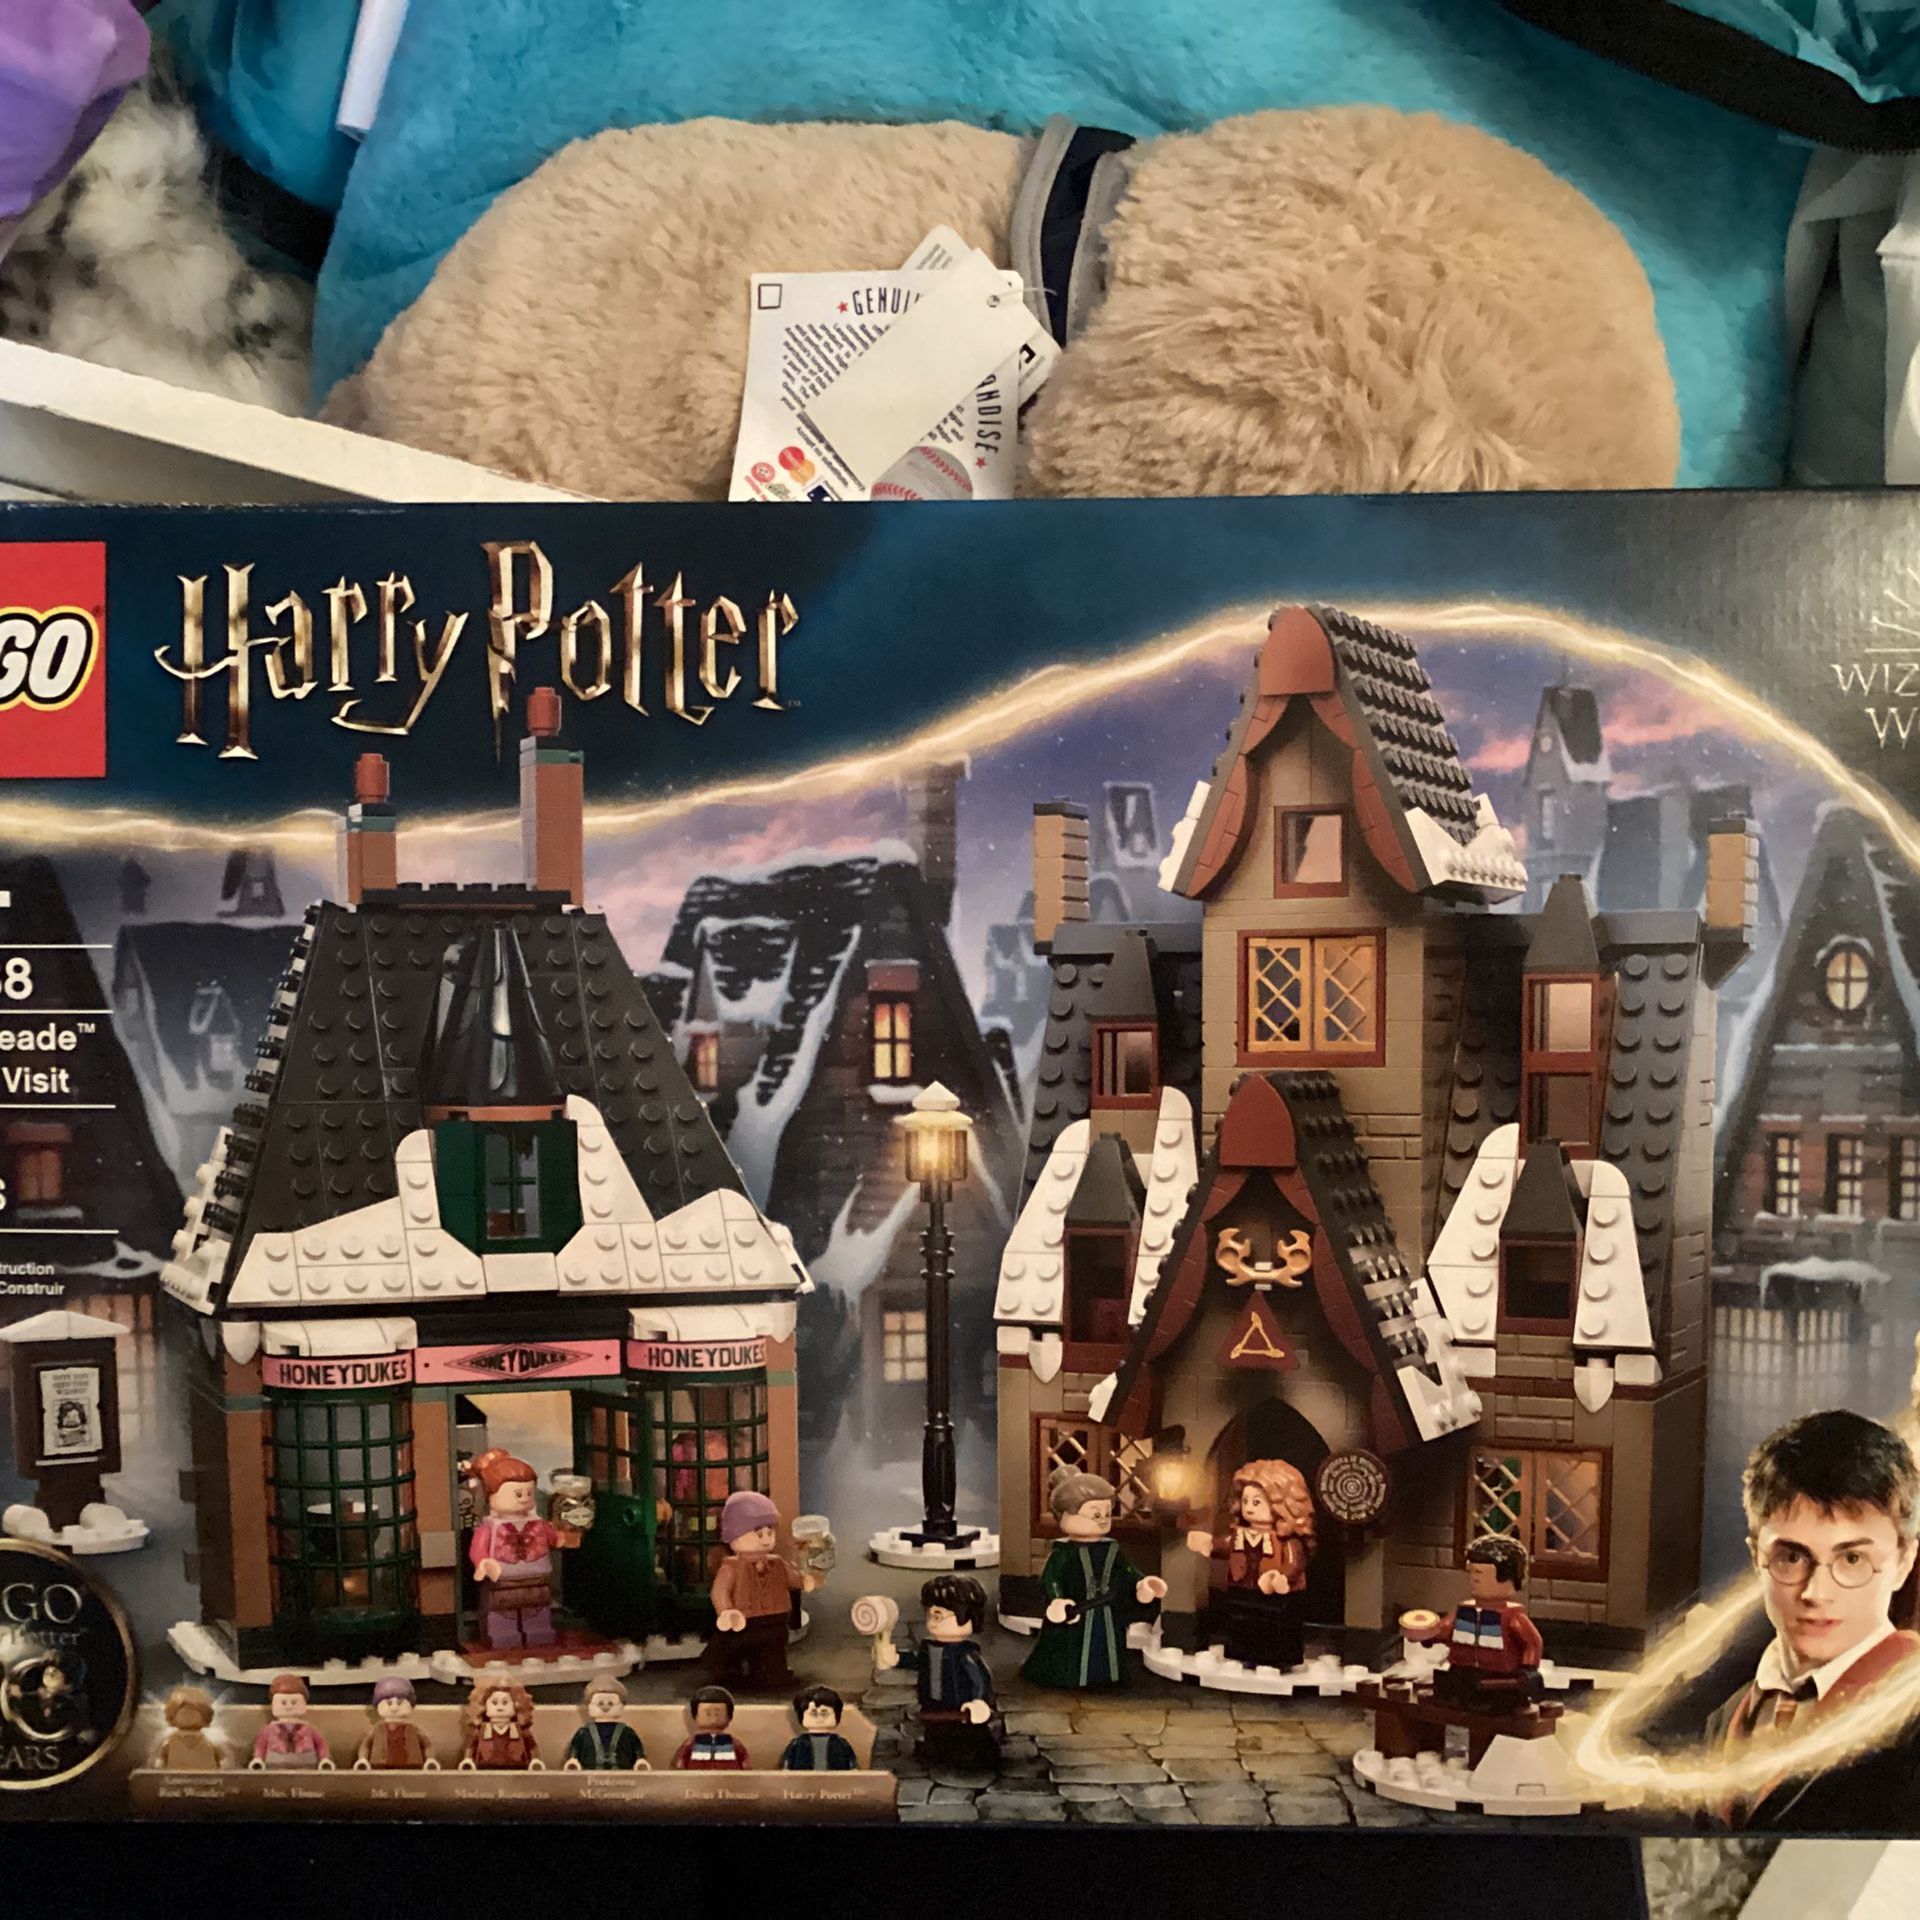 Lego Harry Potter  Hogs Meade Village Visit